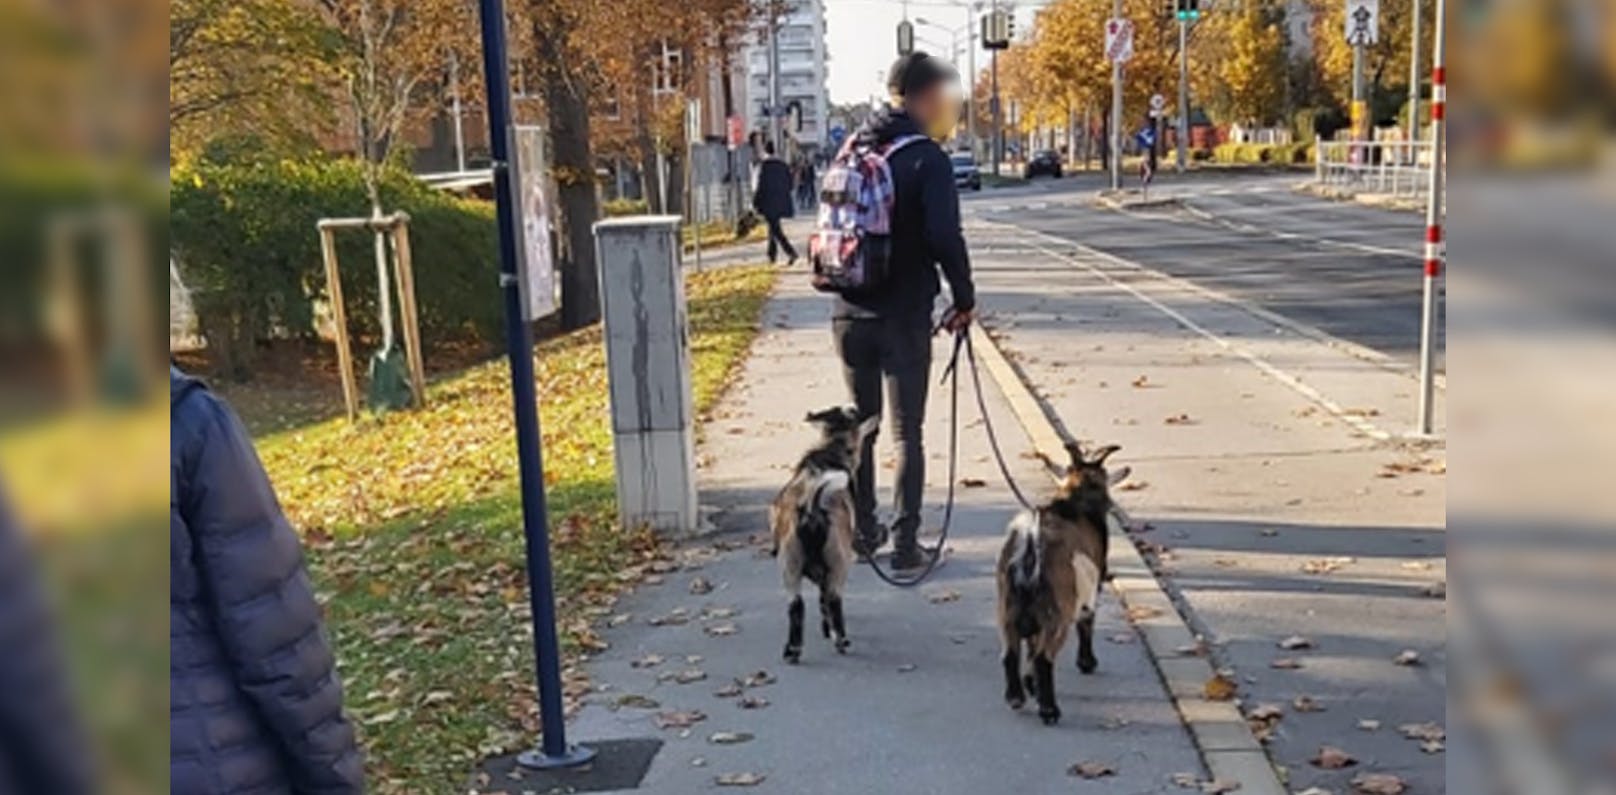 Bild 2: Wiener führt Ziegen an Leine in der Stadt Gassi – <a href="https://www.heute.at/s/wiener-fuehrt-ziegen-an-leine-in-der-stadt-gassi-100171483">Weiterlesen &gt;&gt;&gt;</a>